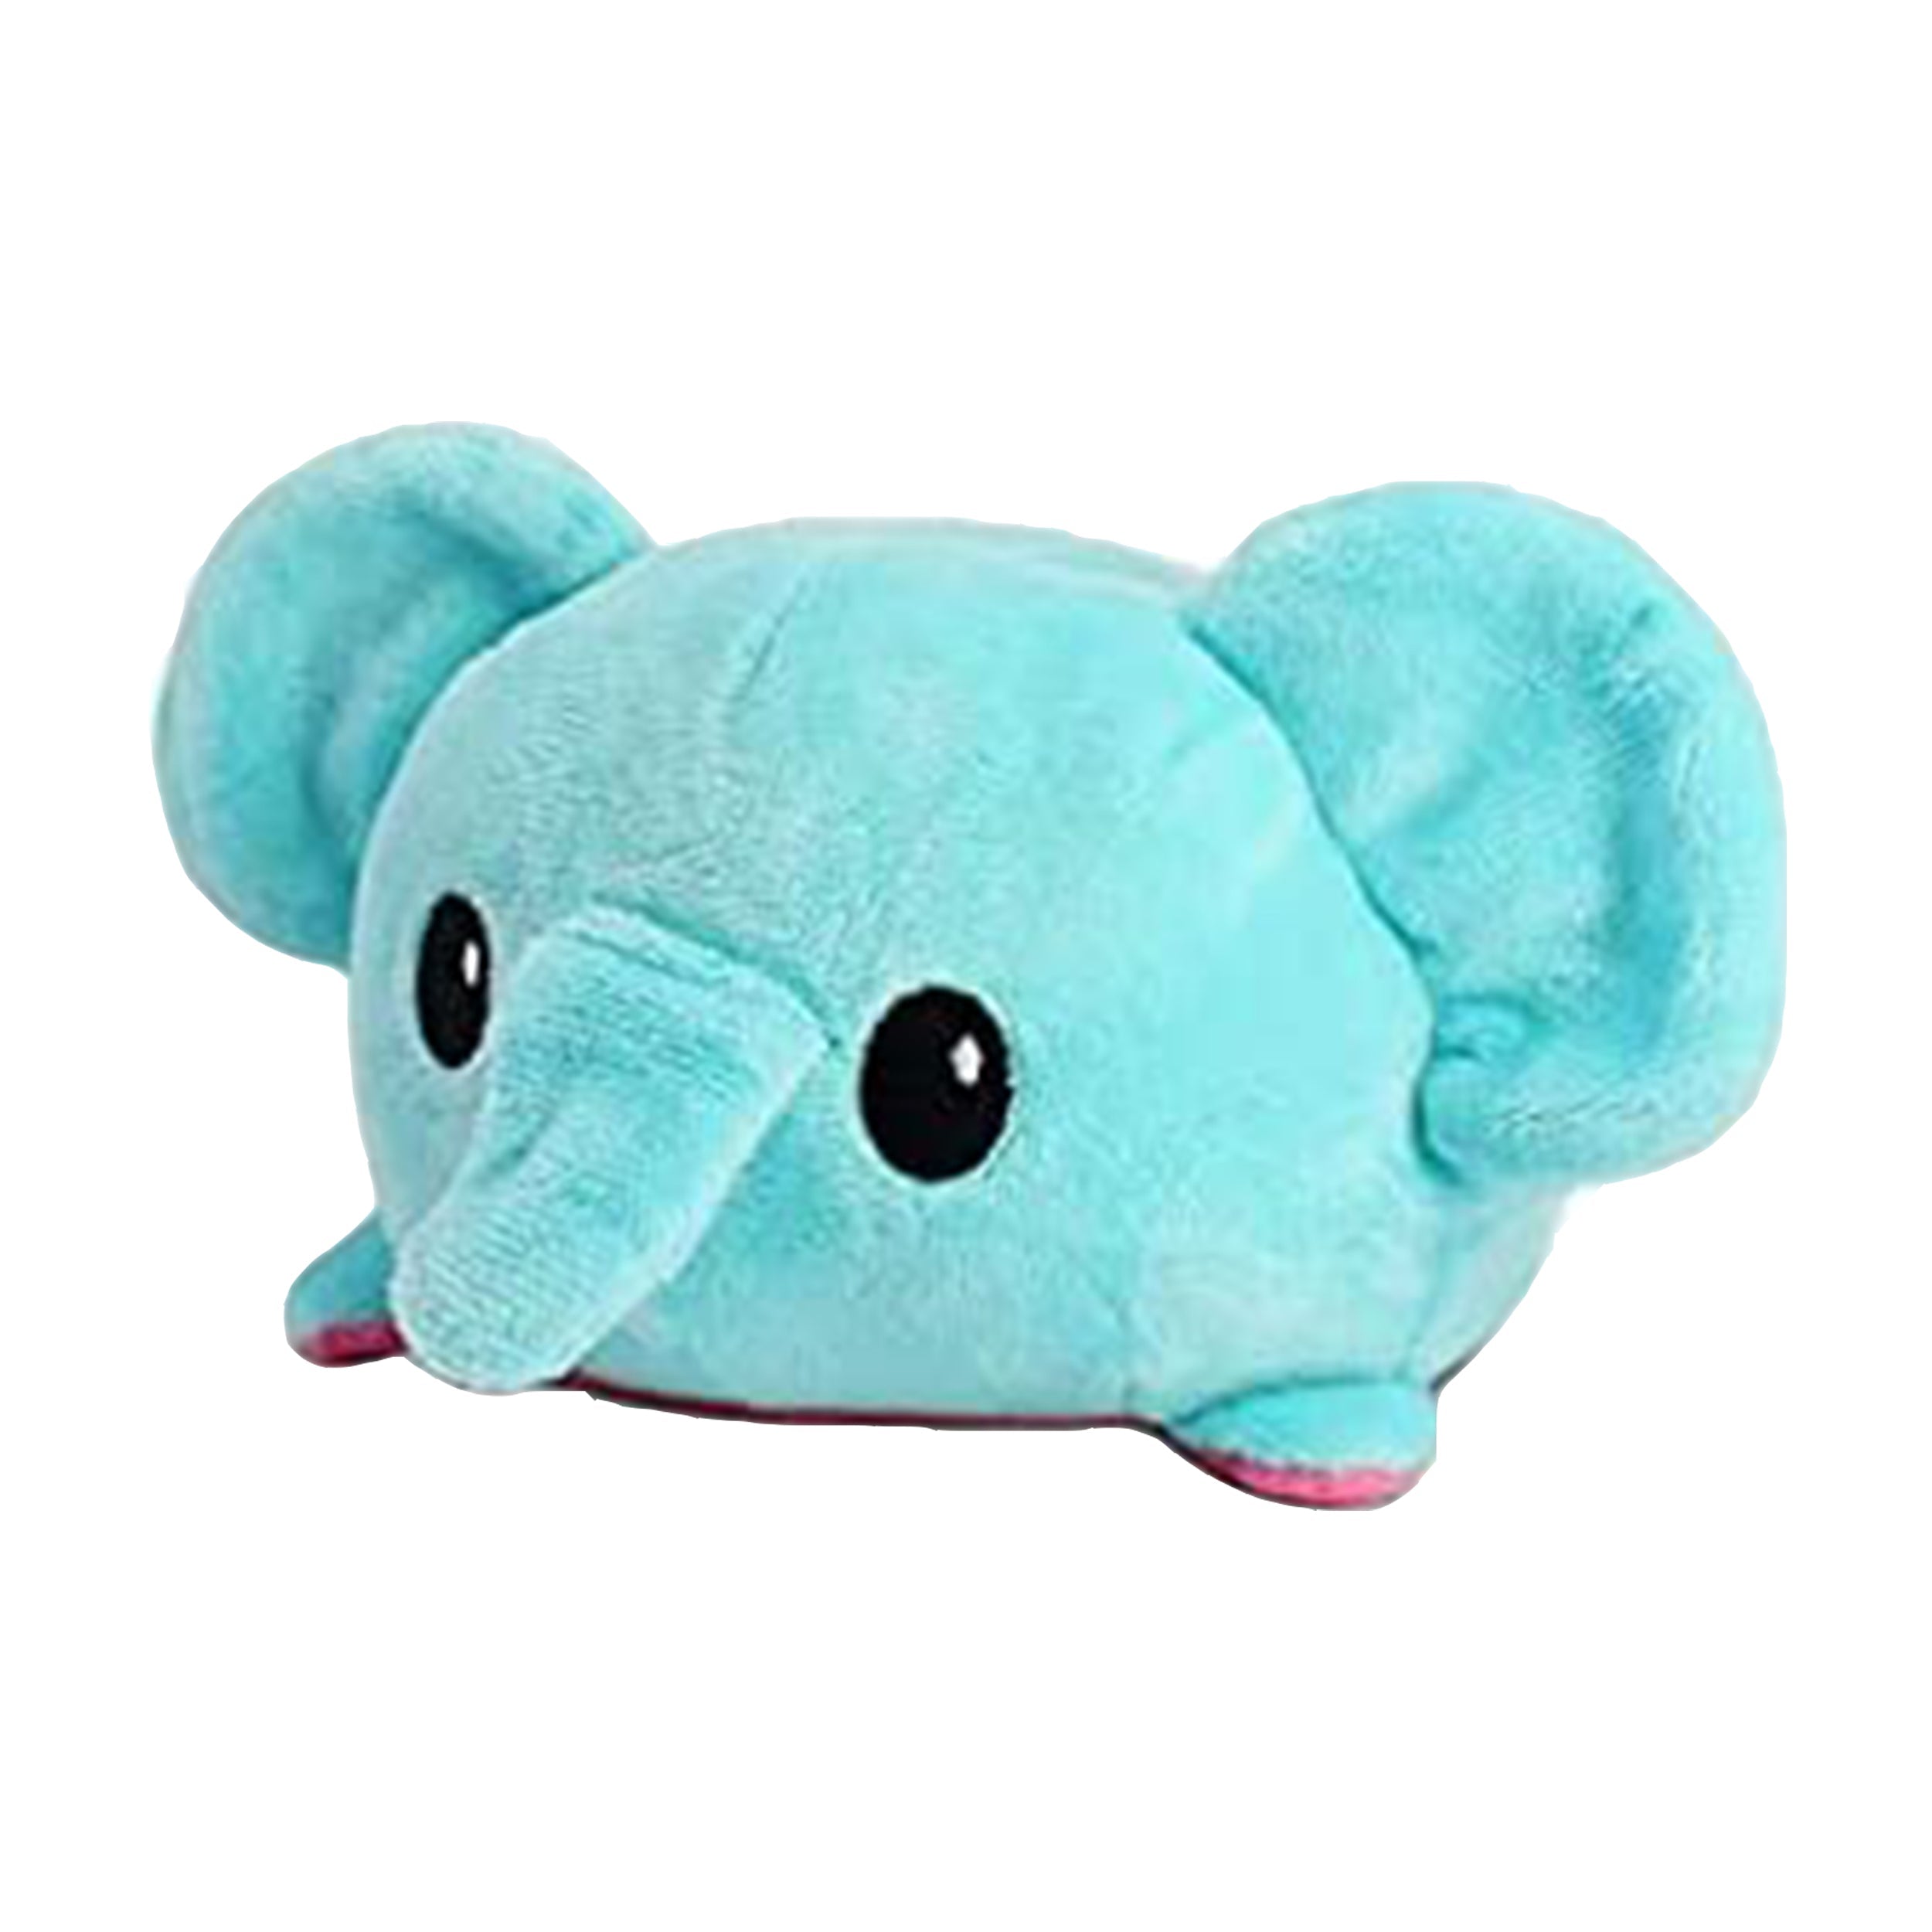 Reversible Elephant Plush Toy